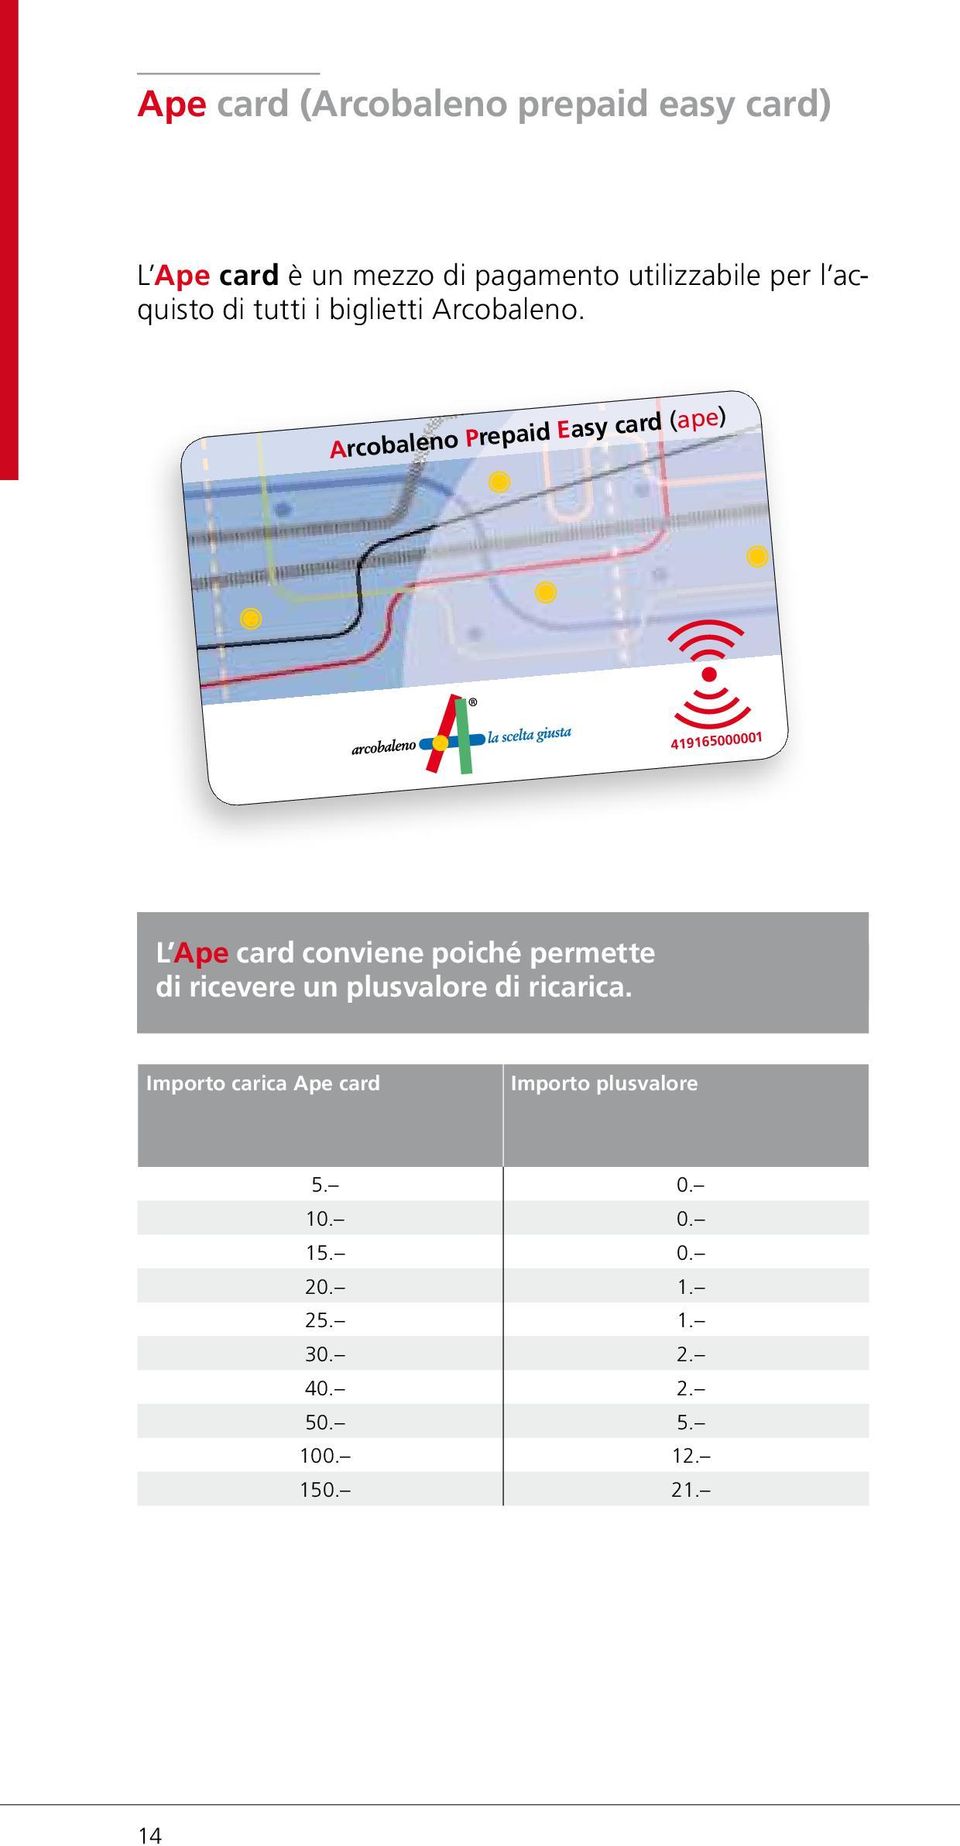 Arcobaleno Prepaid Easy card (ape) 419165000001 L Ape card conviene poiché permette di